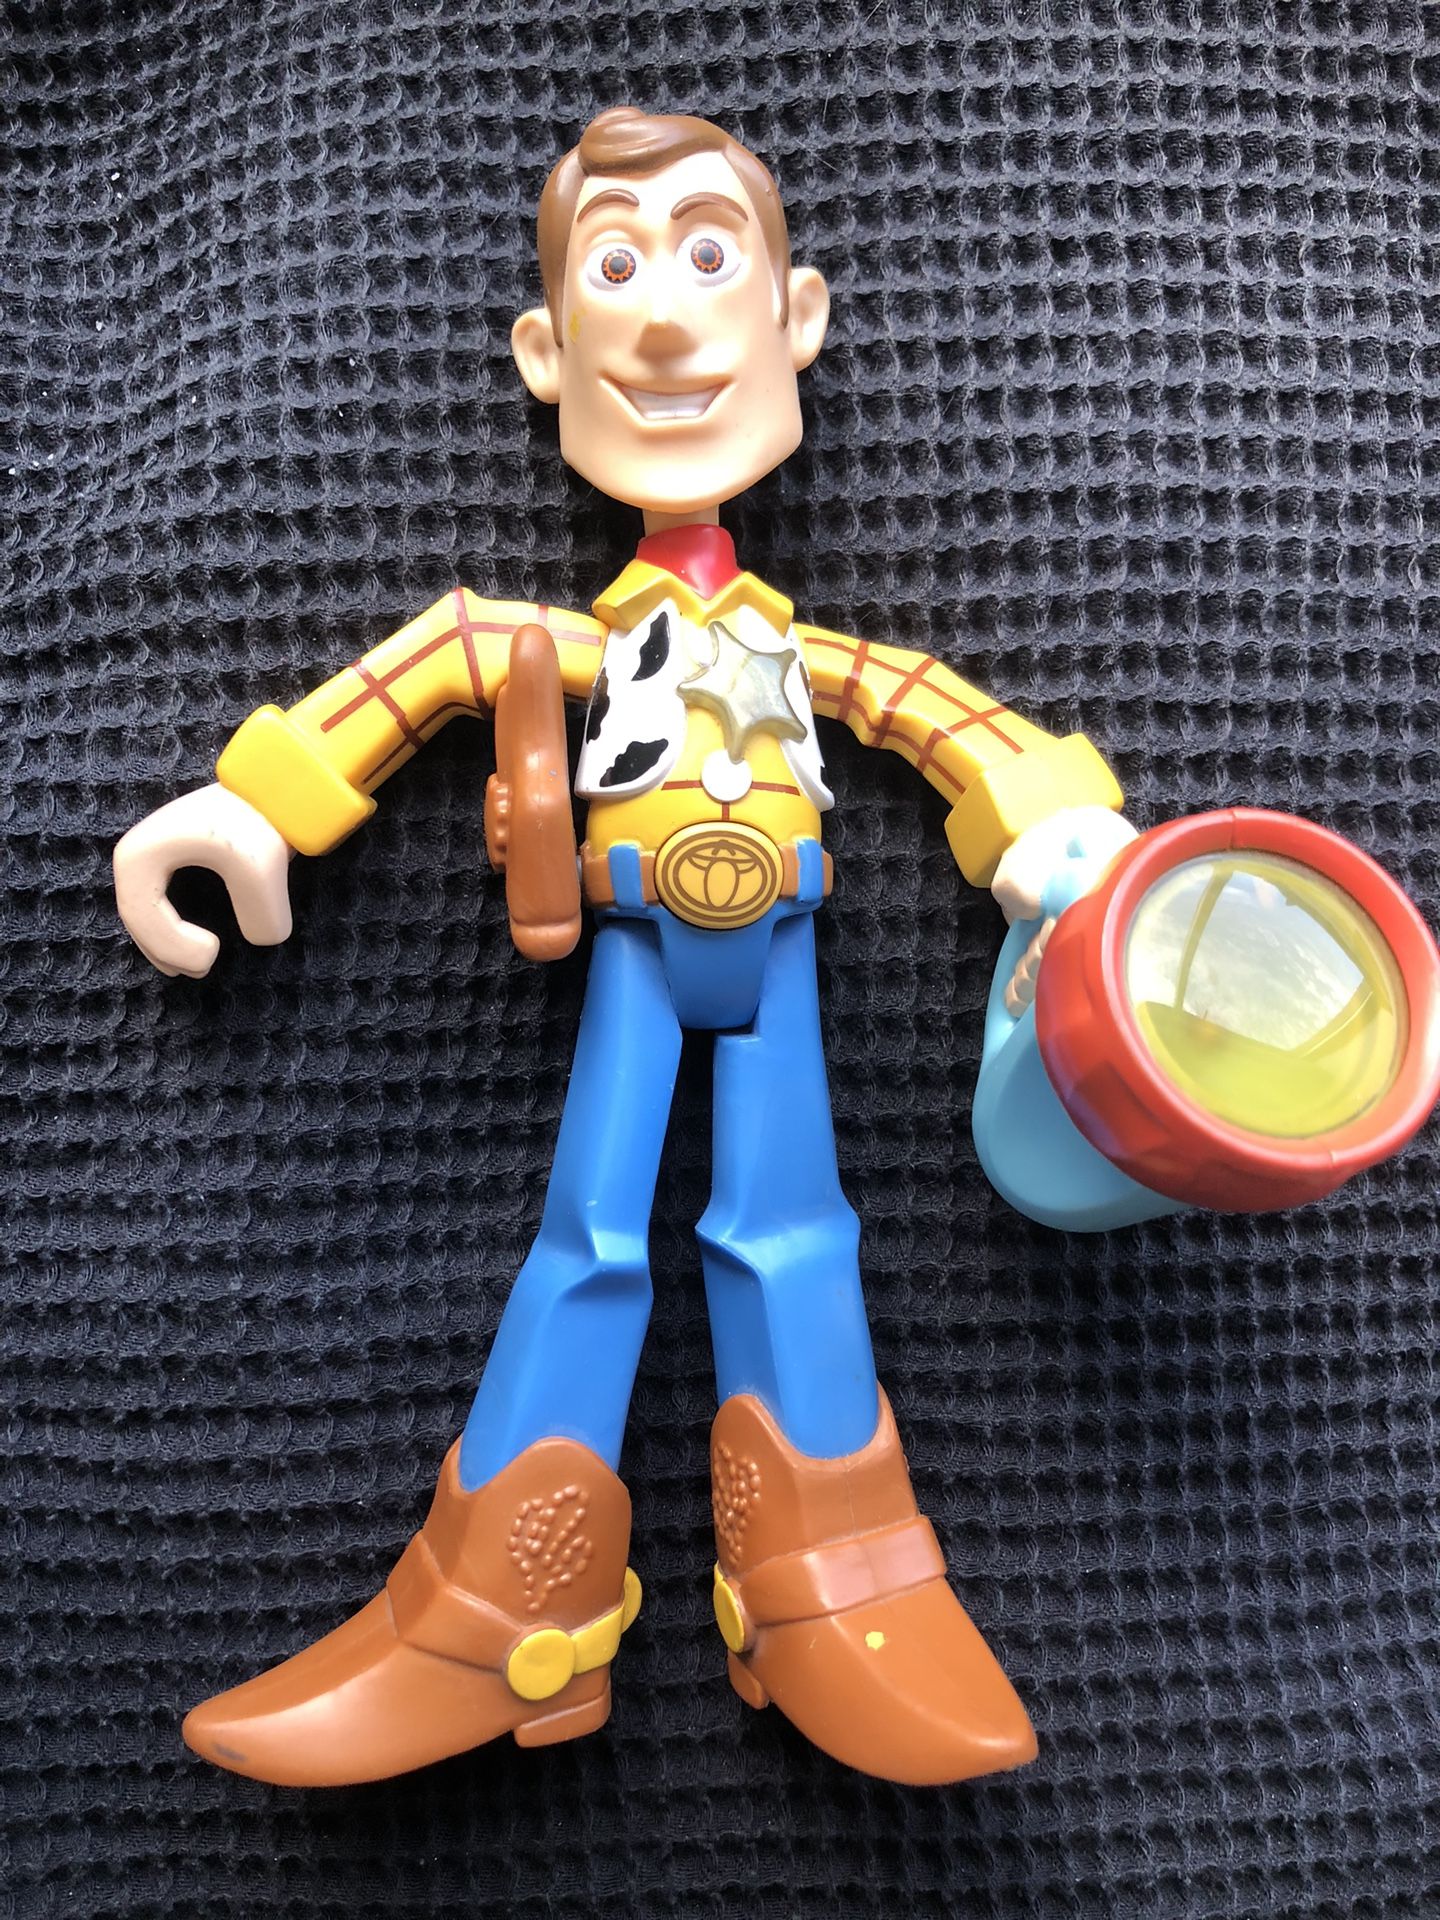 Toy Story Woody figurine